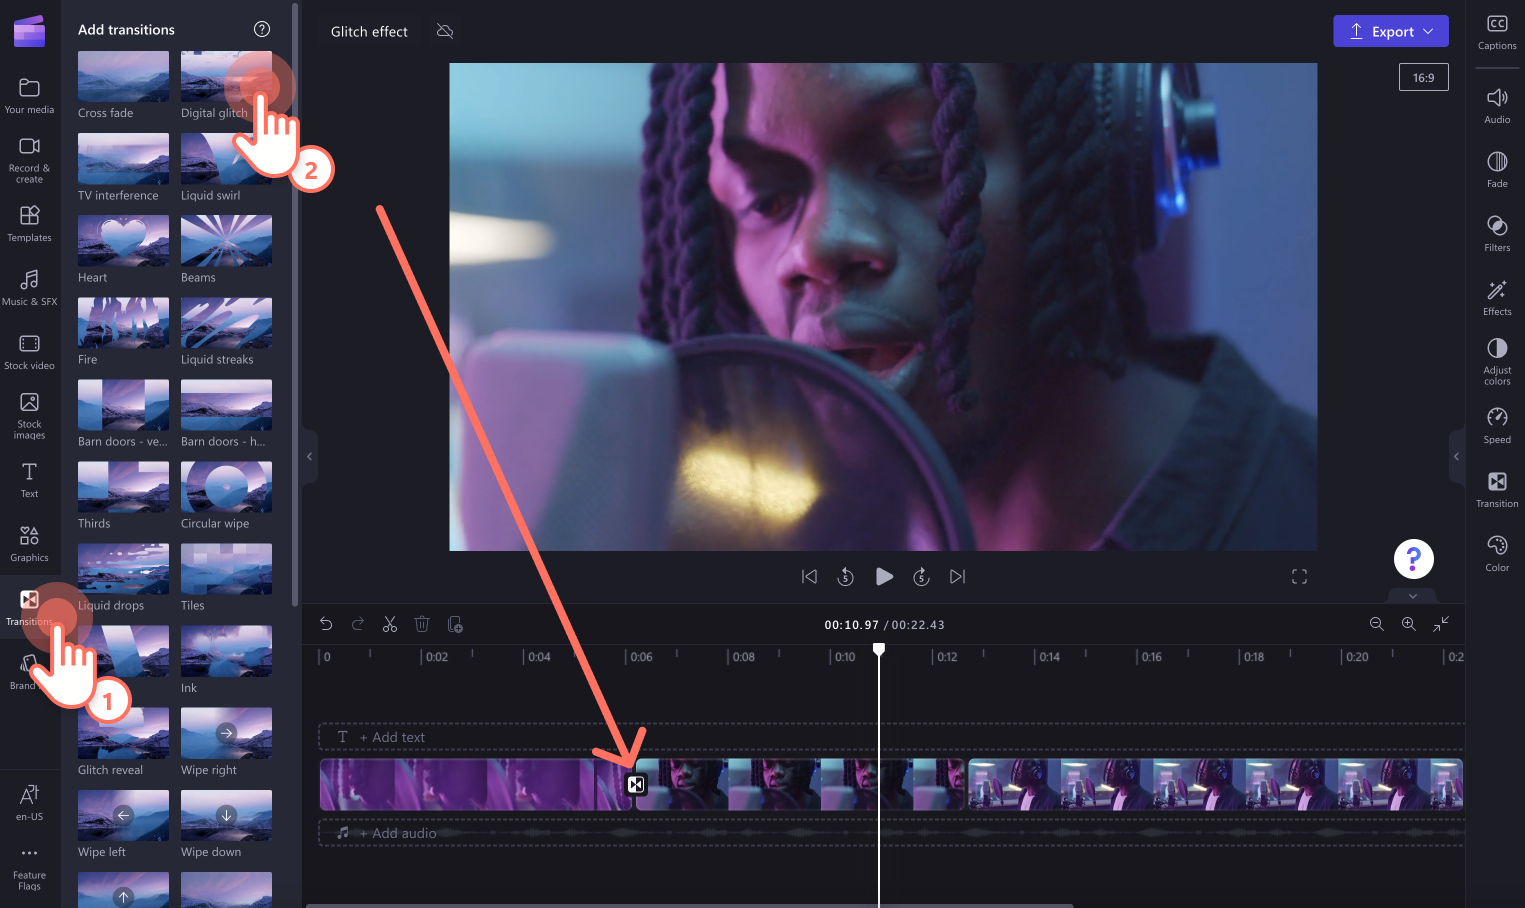 Hình ảnh người dùng thêm hiệu ứng chuyển tiếp Glitch vào giữa hai clip trên dòng thời gian.